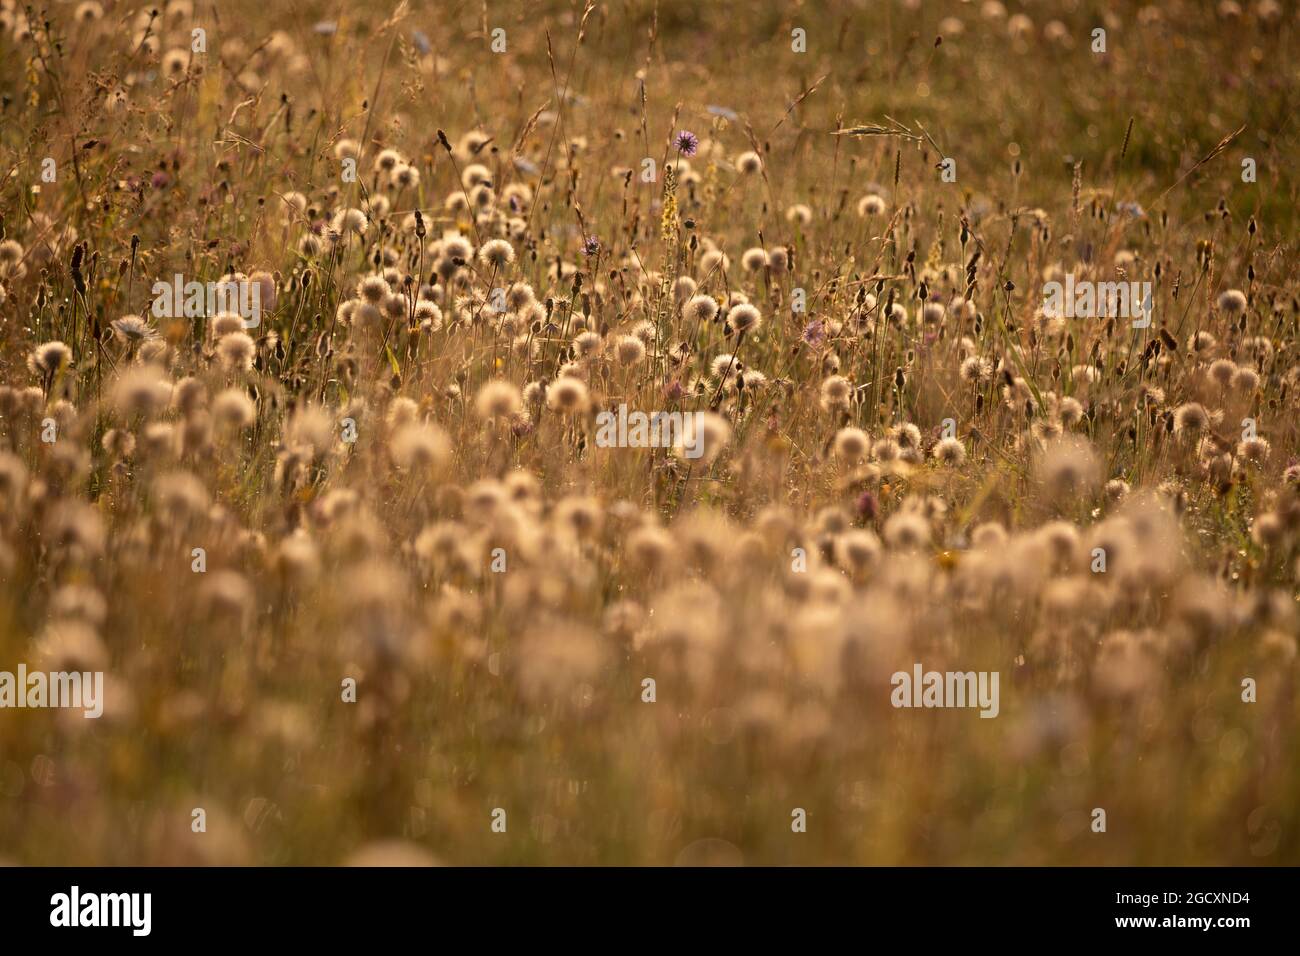 Têtes de graines rétroéclairées de plantes à ragoût commun (Senecio jacobaea) en croissance dans les prairies, Somerset, Angleterre, Royaume-Uni, Europe Banque D'Images